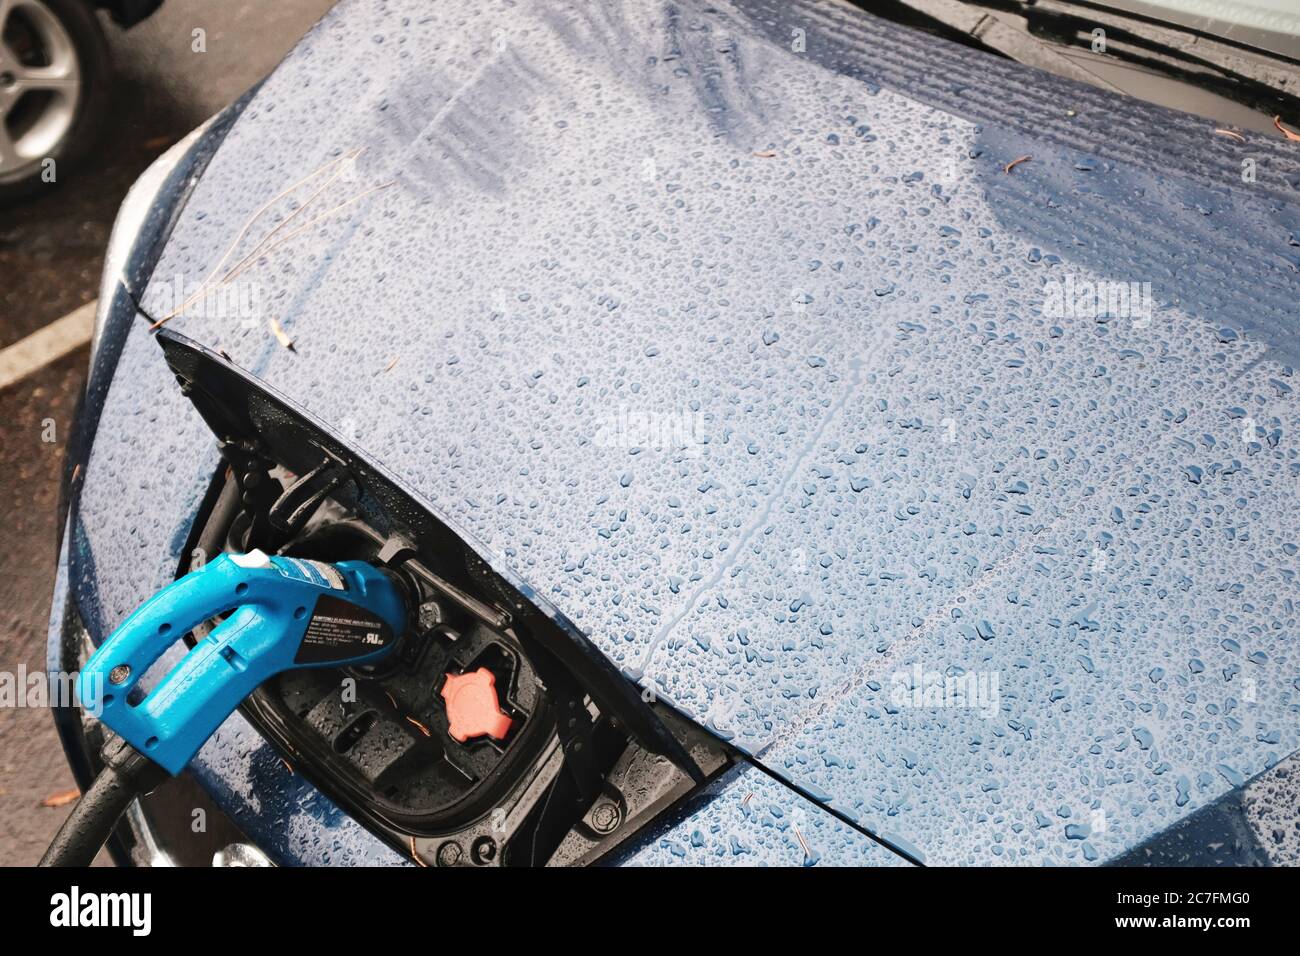 PORTLAND, ÉTATS-UNIS - 20 décembre 2019 : une voiture bleue fraîche qui se recharge pour être prête à partir Banque D'Images